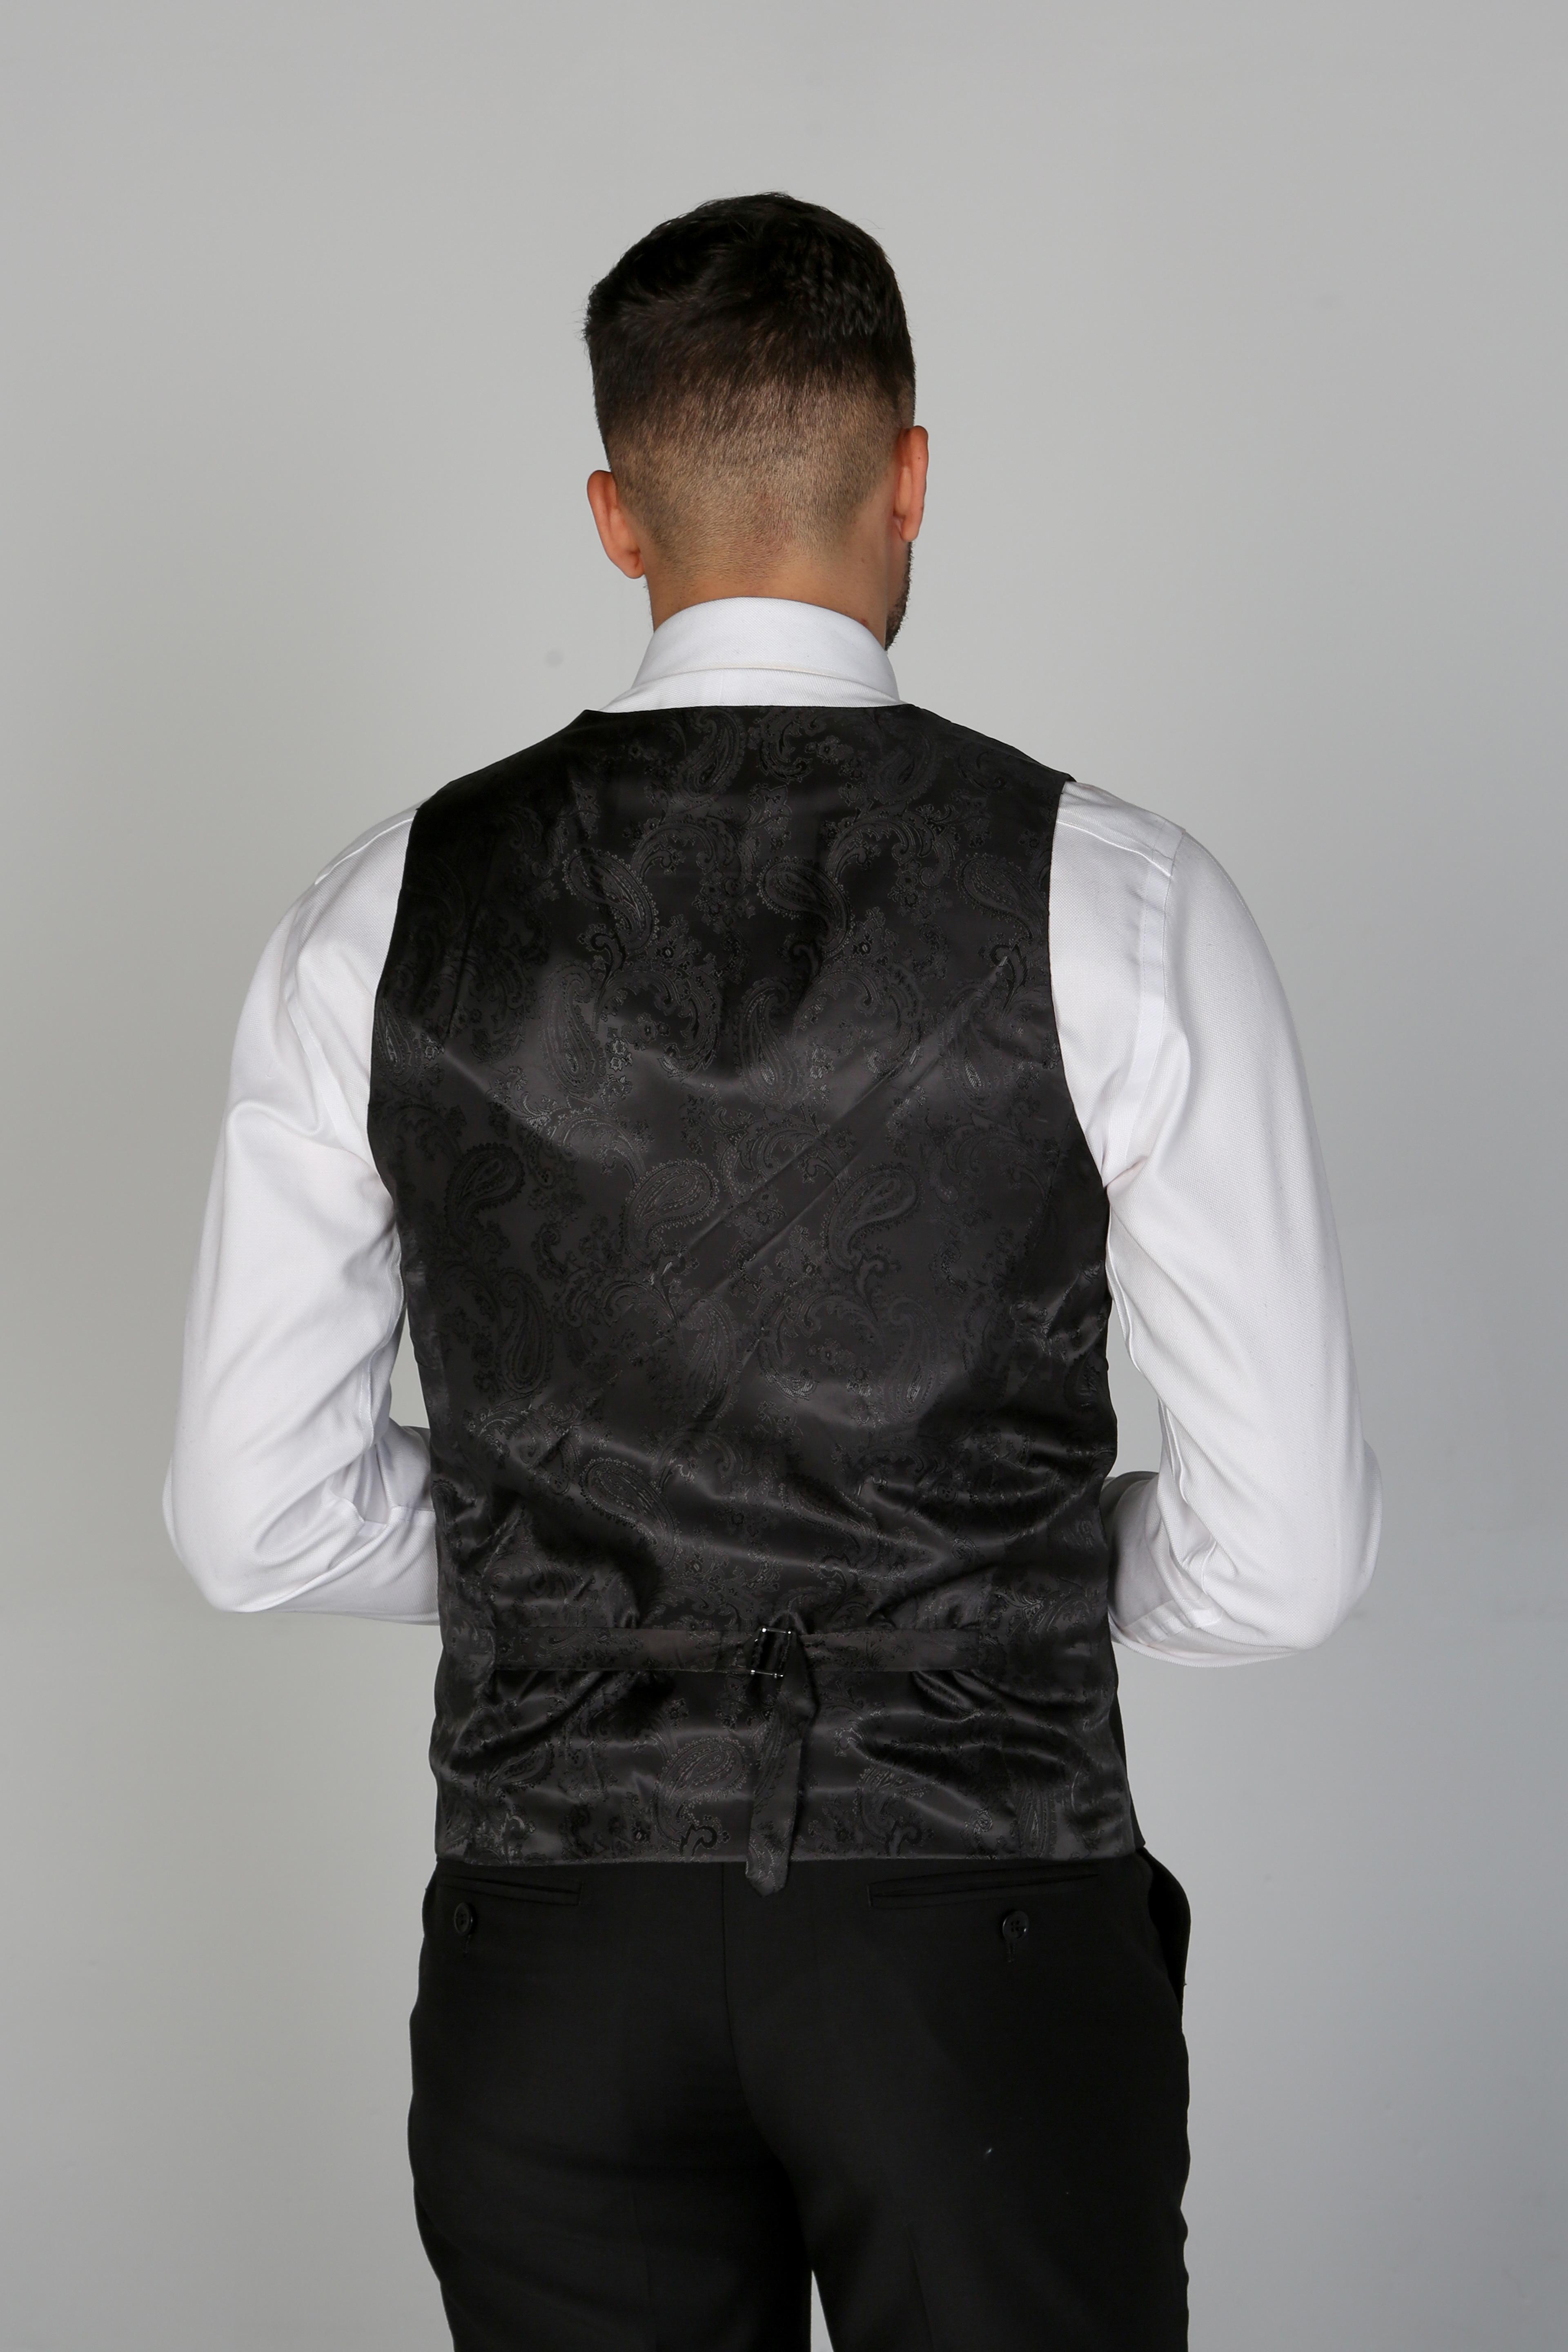 Men's Tailored Fit Black Suit - PARKER - Black